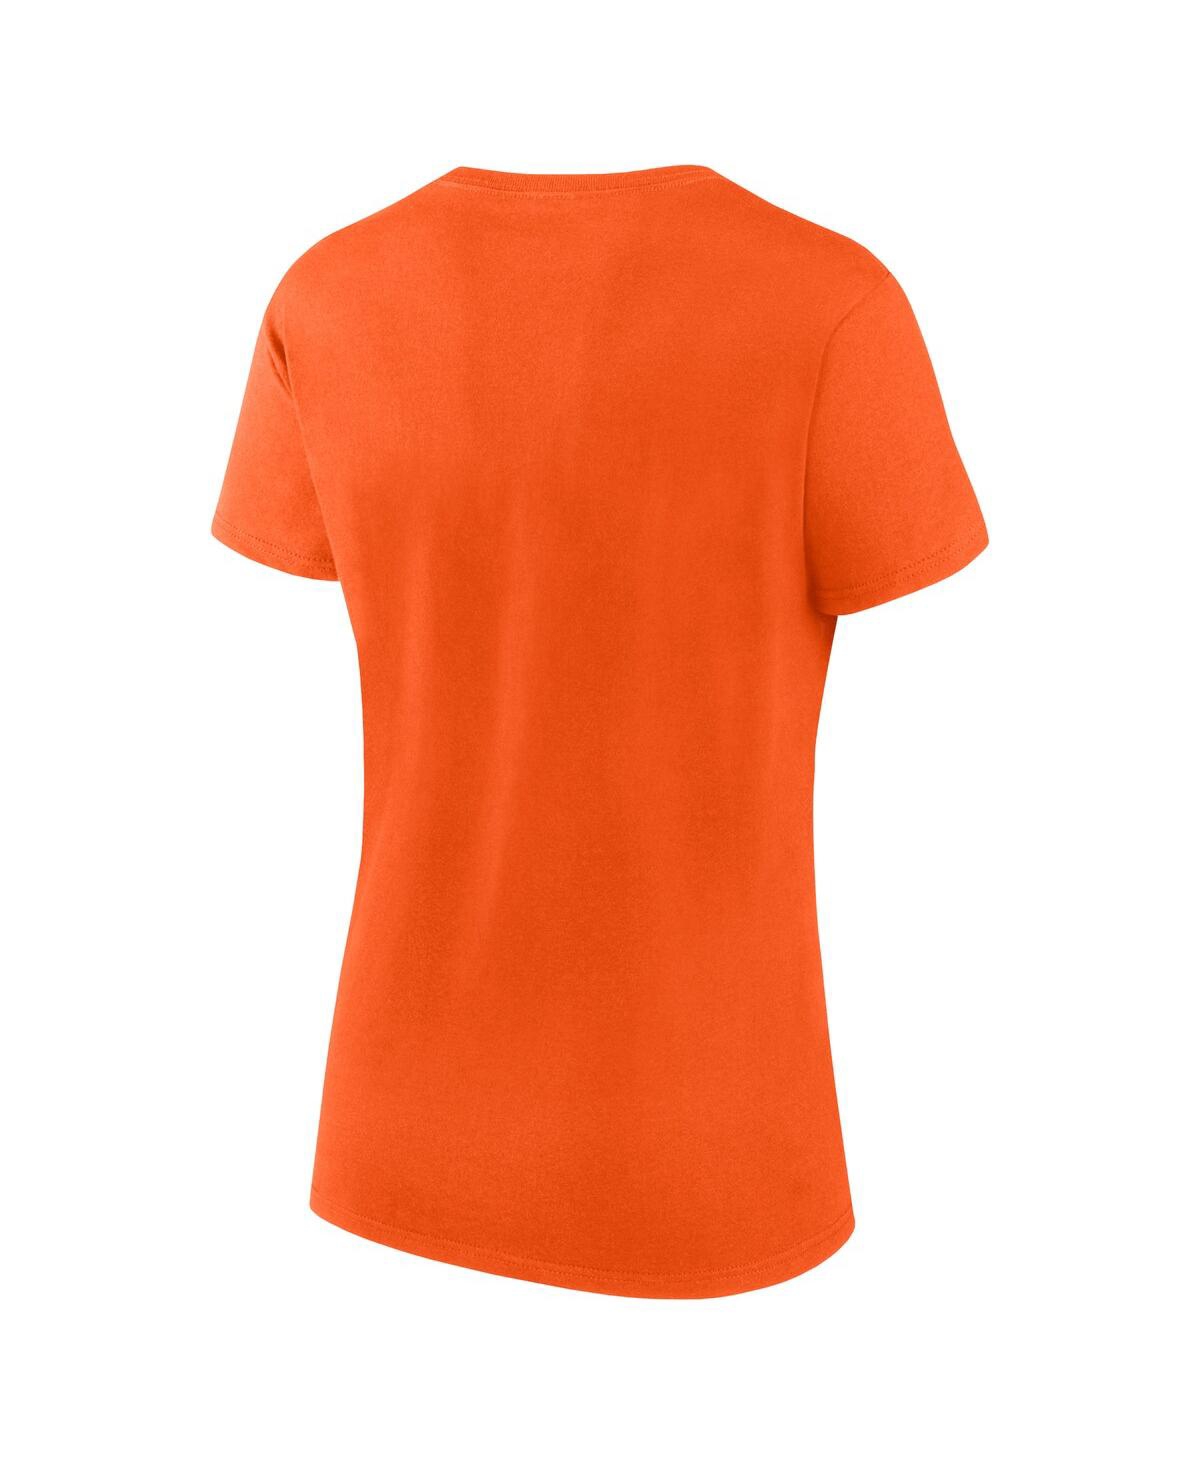 Women's Fanatics Branded Orange Philadelphia Flyers Jersey Long